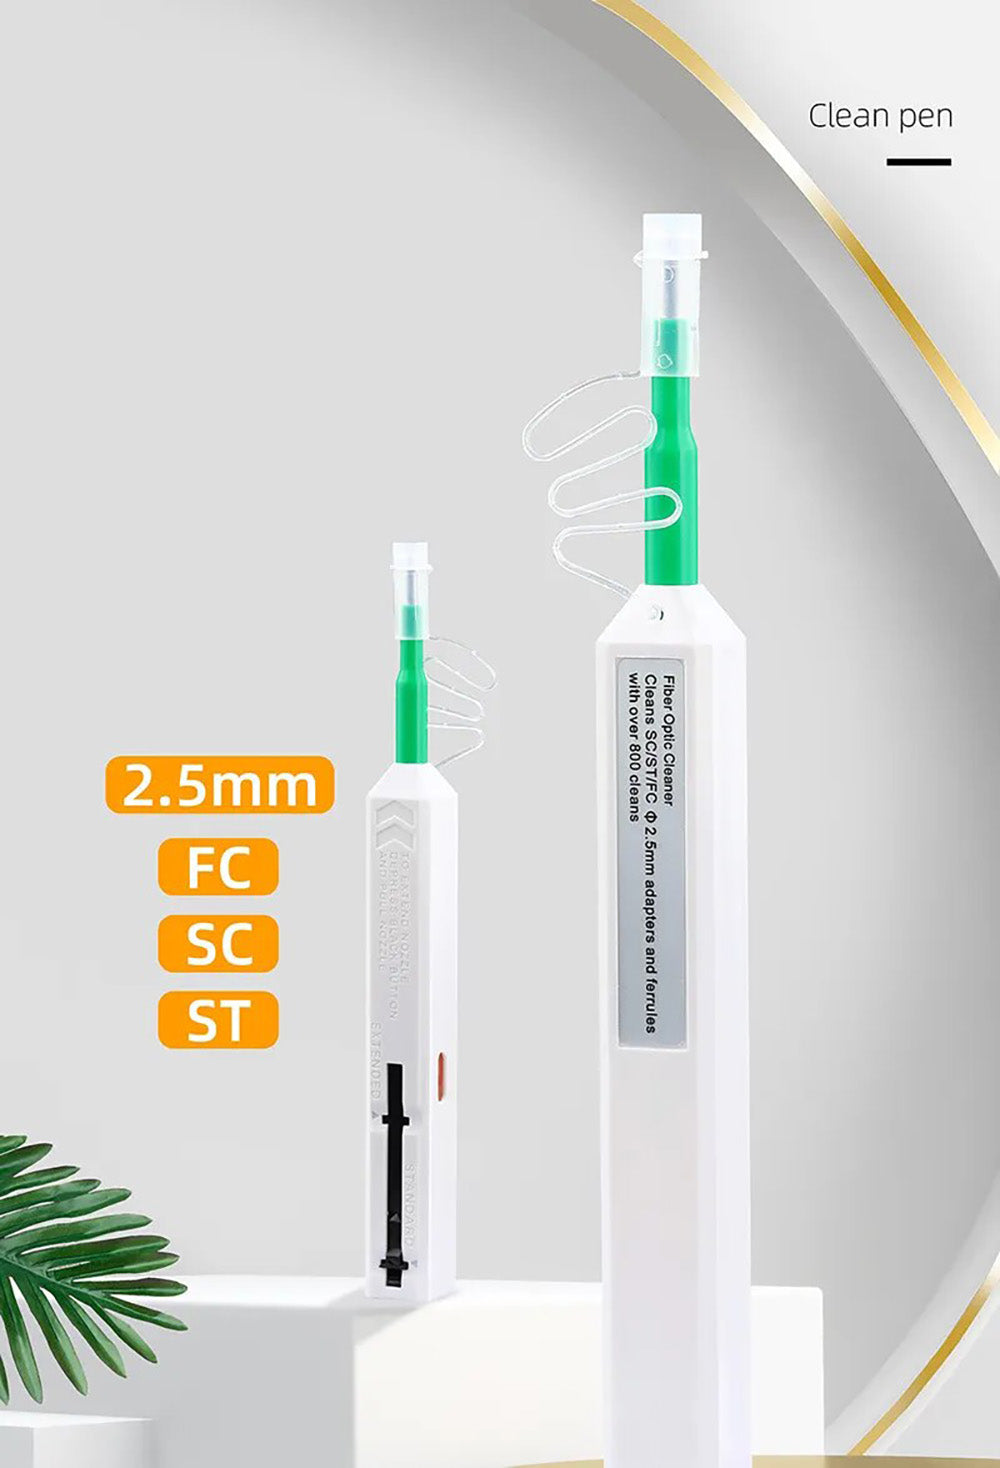 2.5mm FC SC ST Fiber Cleaner Pen